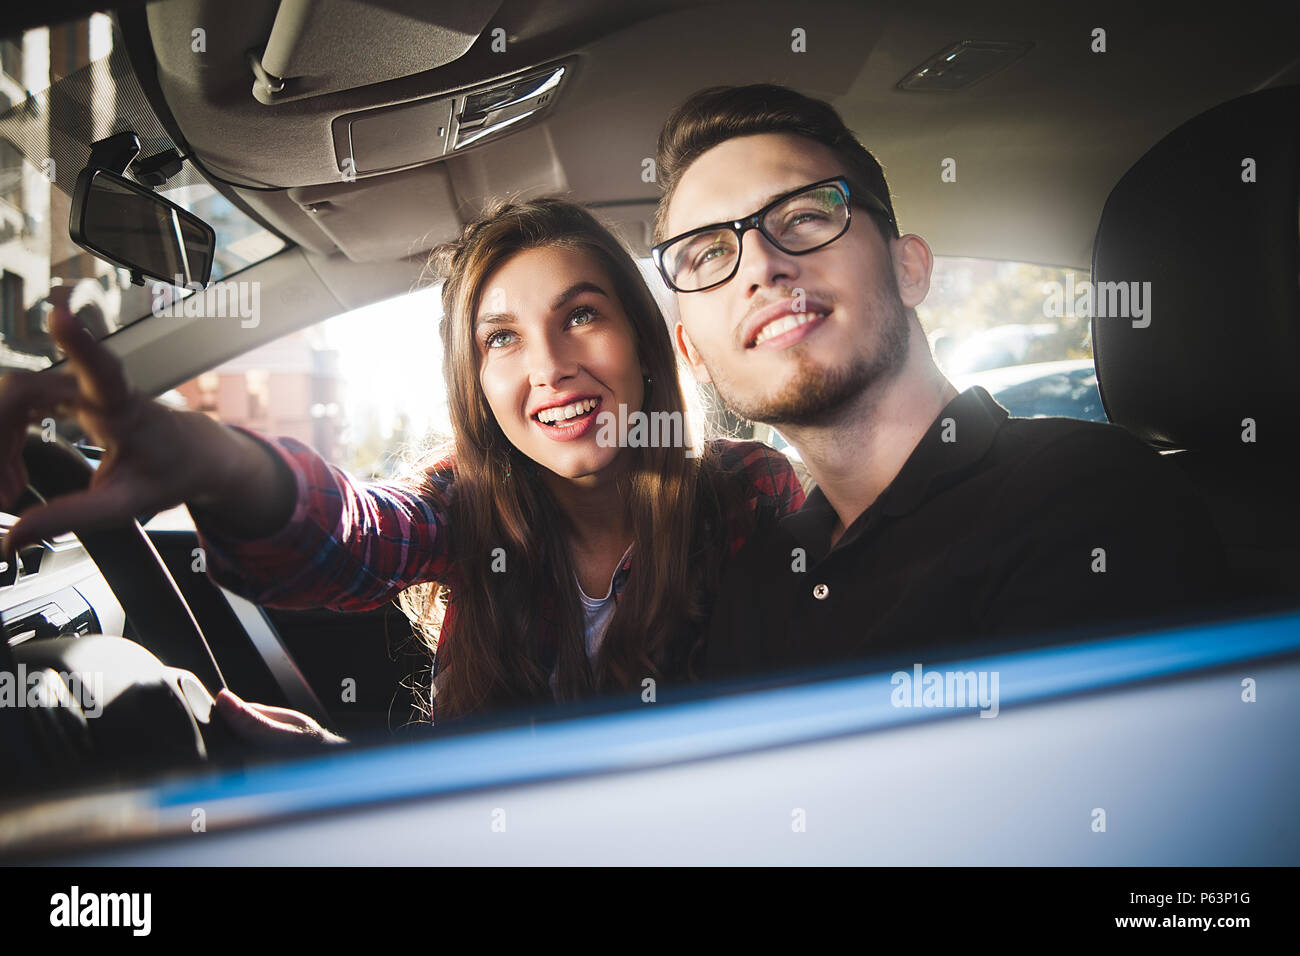 Genießen reisen. Schöne junge Paar saß auf dem Beifahrersitz und lächelnd, während gut aussehender Mann, der ein Auto fährt. Stockfoto